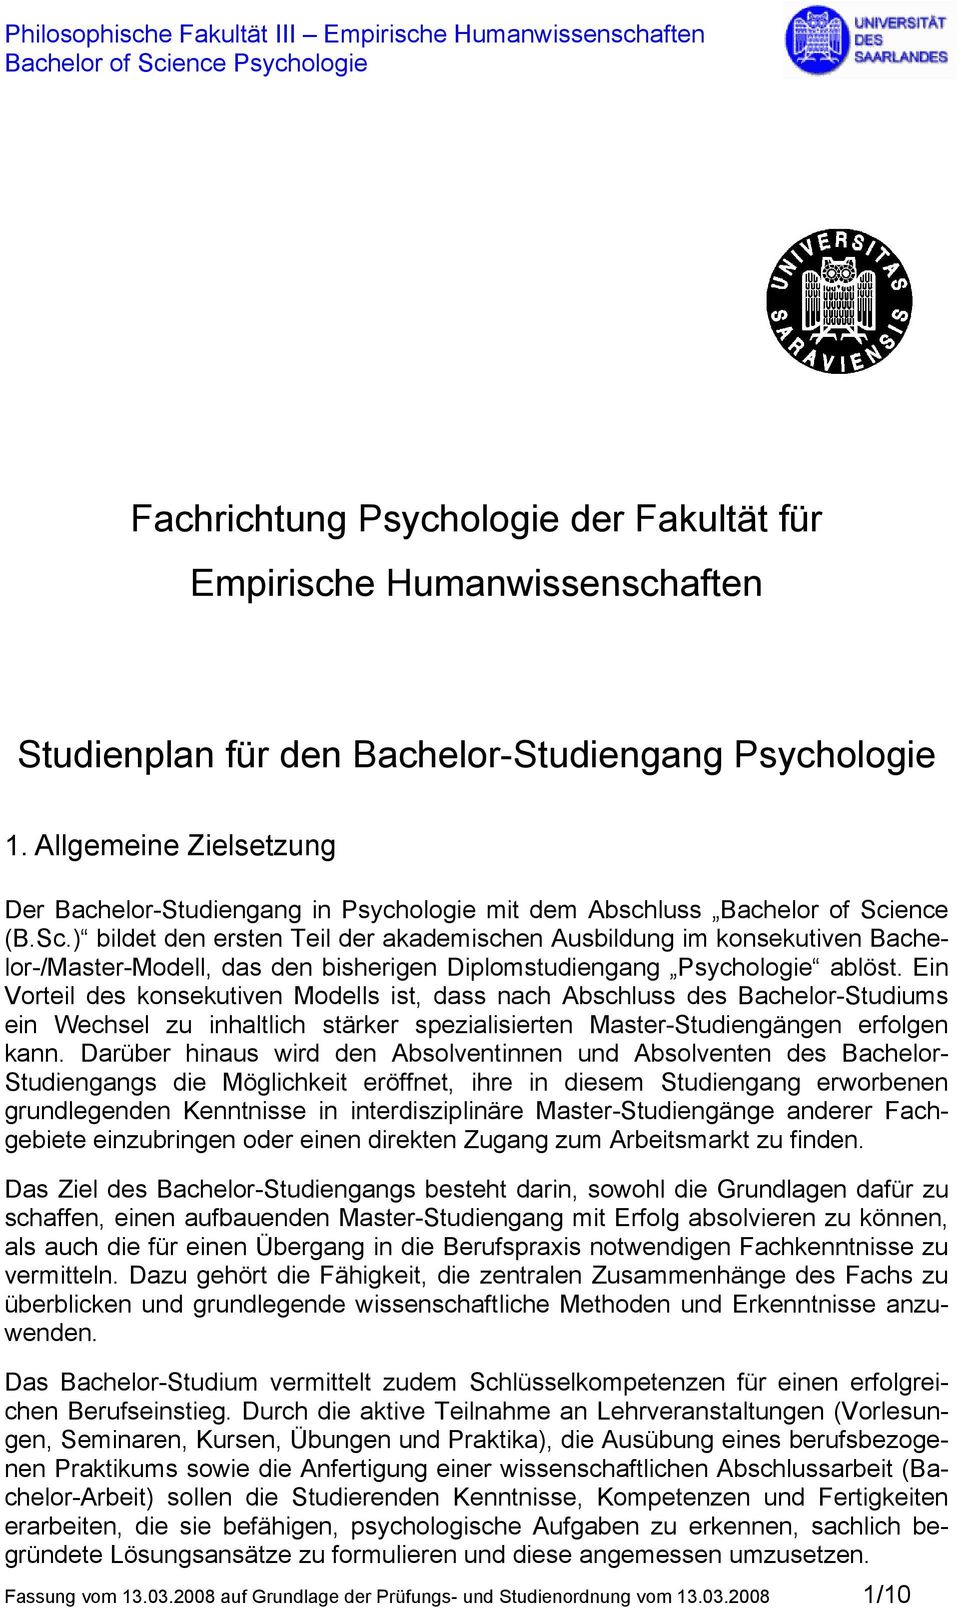 ence (B.Sc.) bildet den ersten Teil der akademischen Ausbildung im konsekutiven Bachelor-/Master-Modell, das den bisherigen Diplomstudiengang Psychologie ablöst.